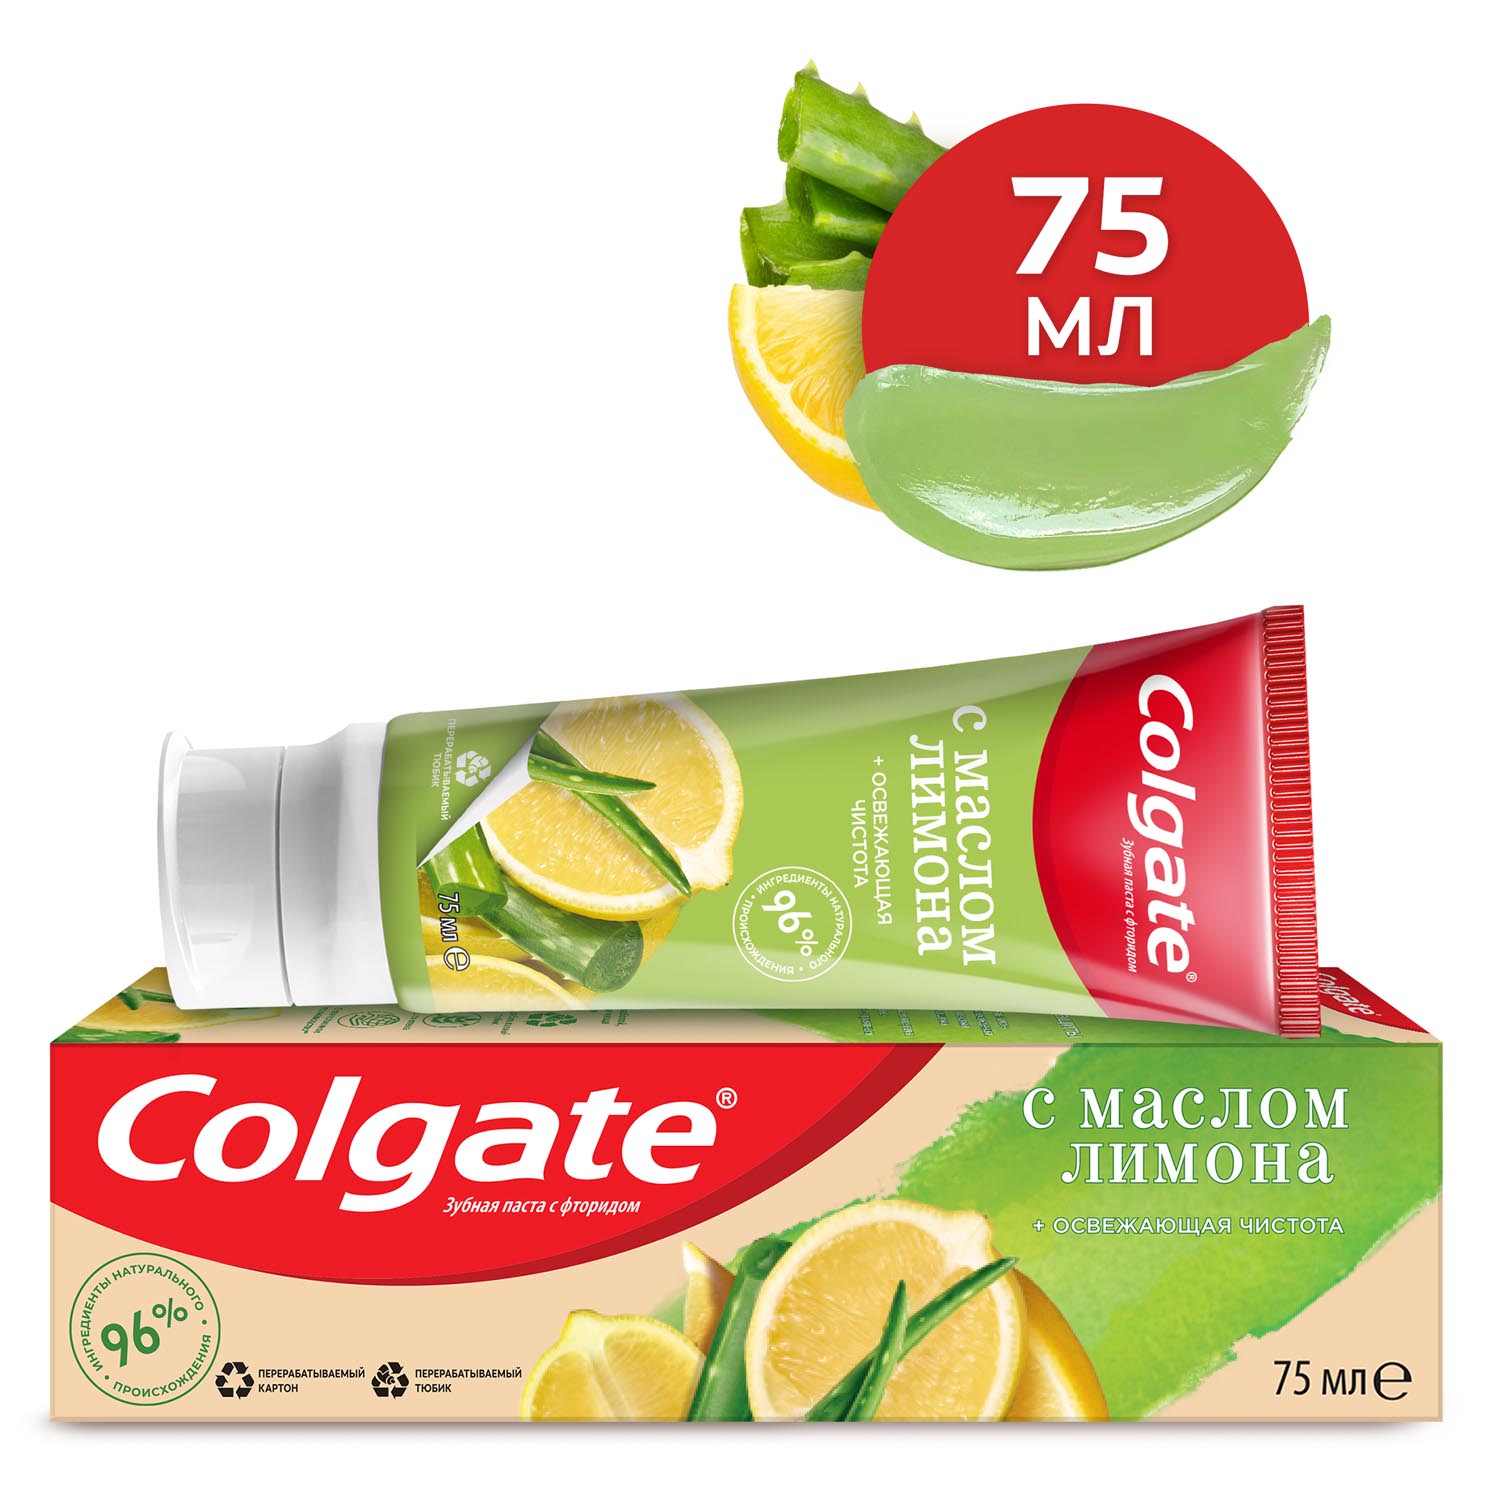 Зубная паста Colgate Naturals Освежающая чистота с маслом лимона, с фторидом, 75 мл колгейт паста зубная освежающая чистота с маслом лимона 75мл